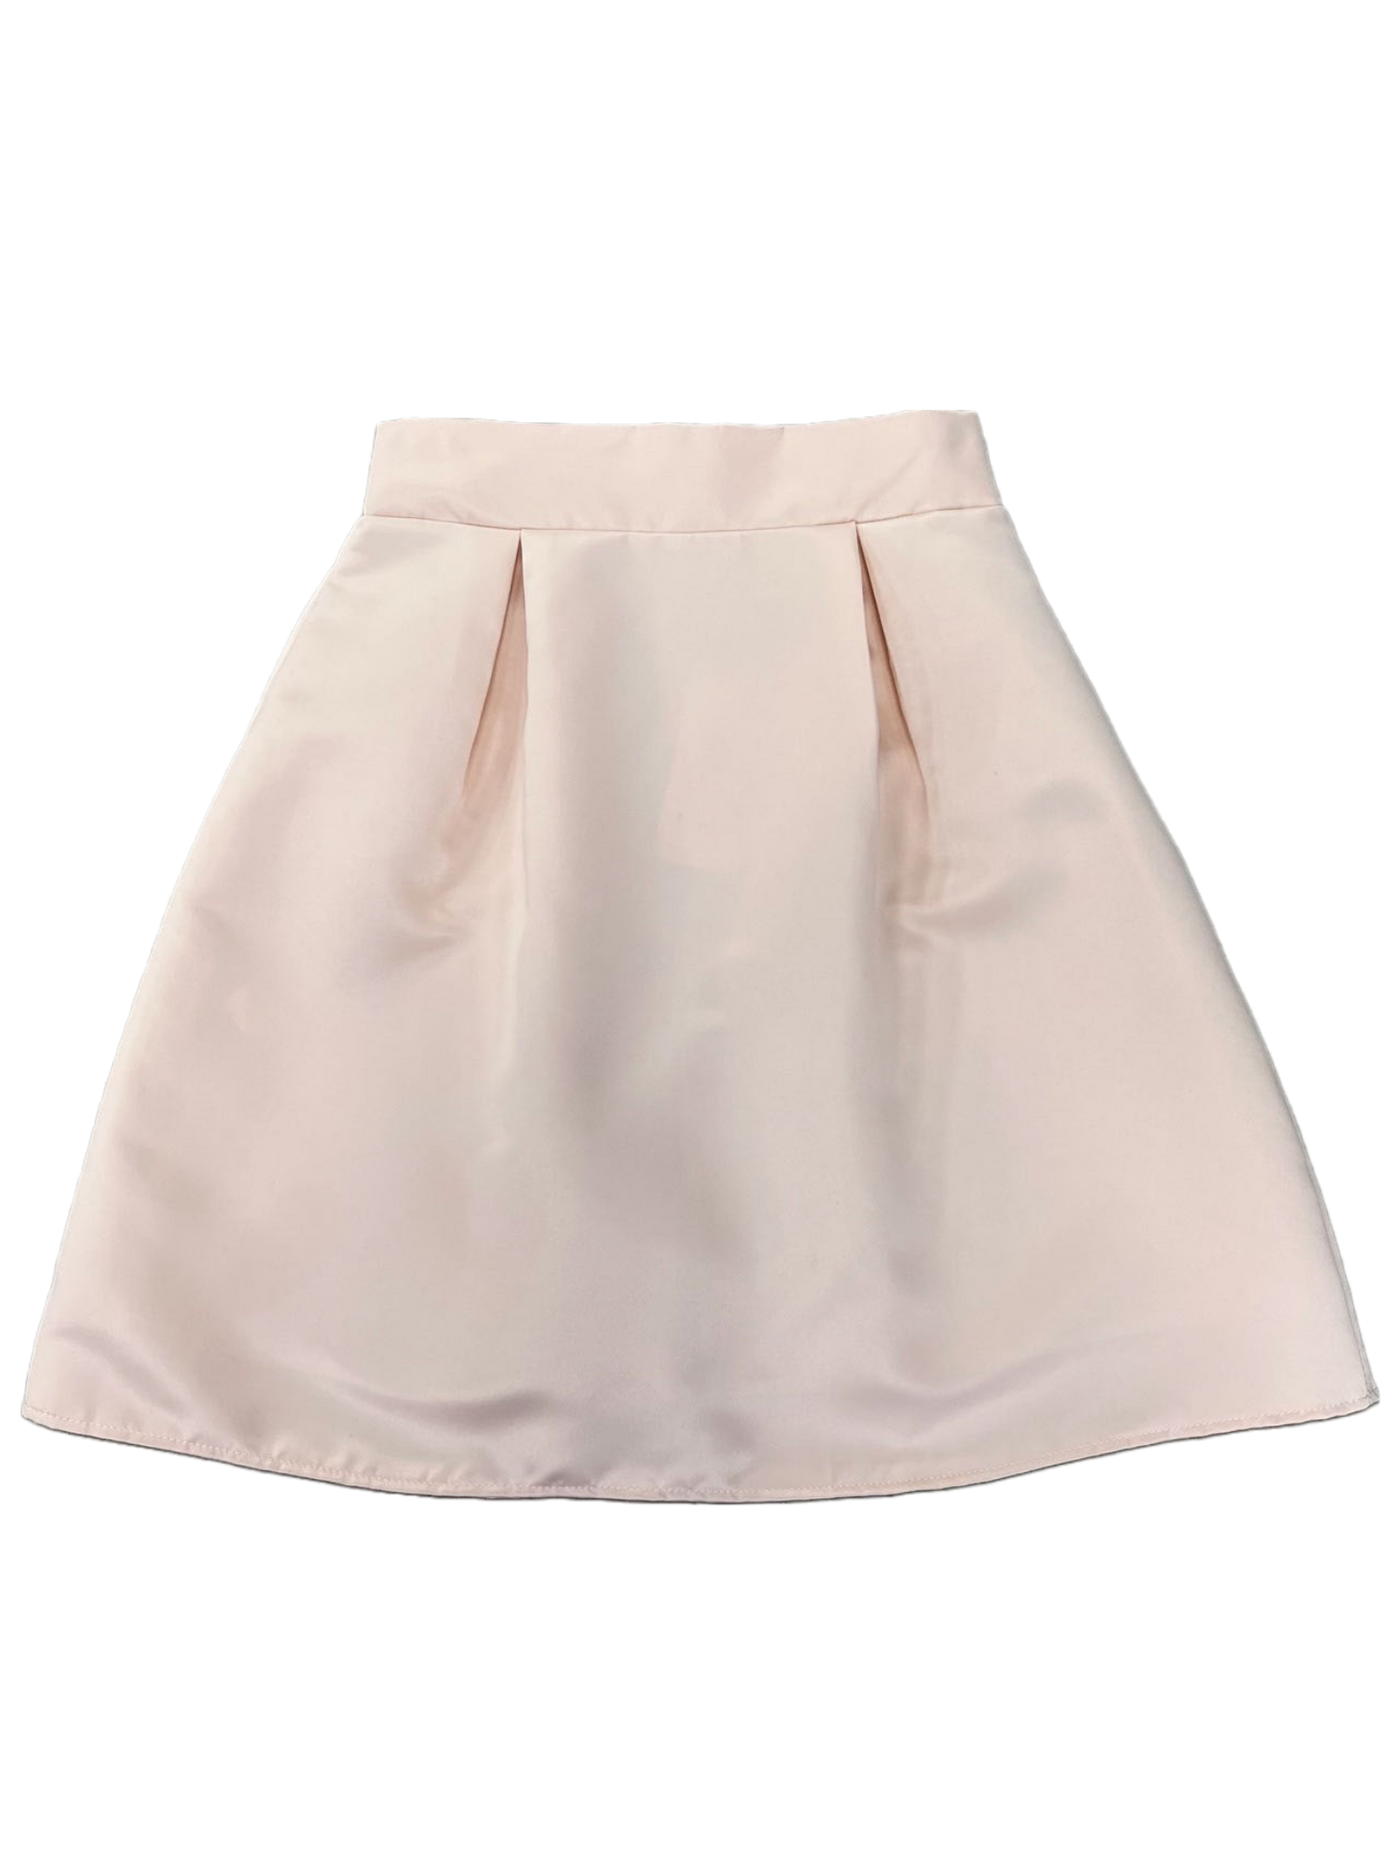 Skirt Hannah 08507 Roze